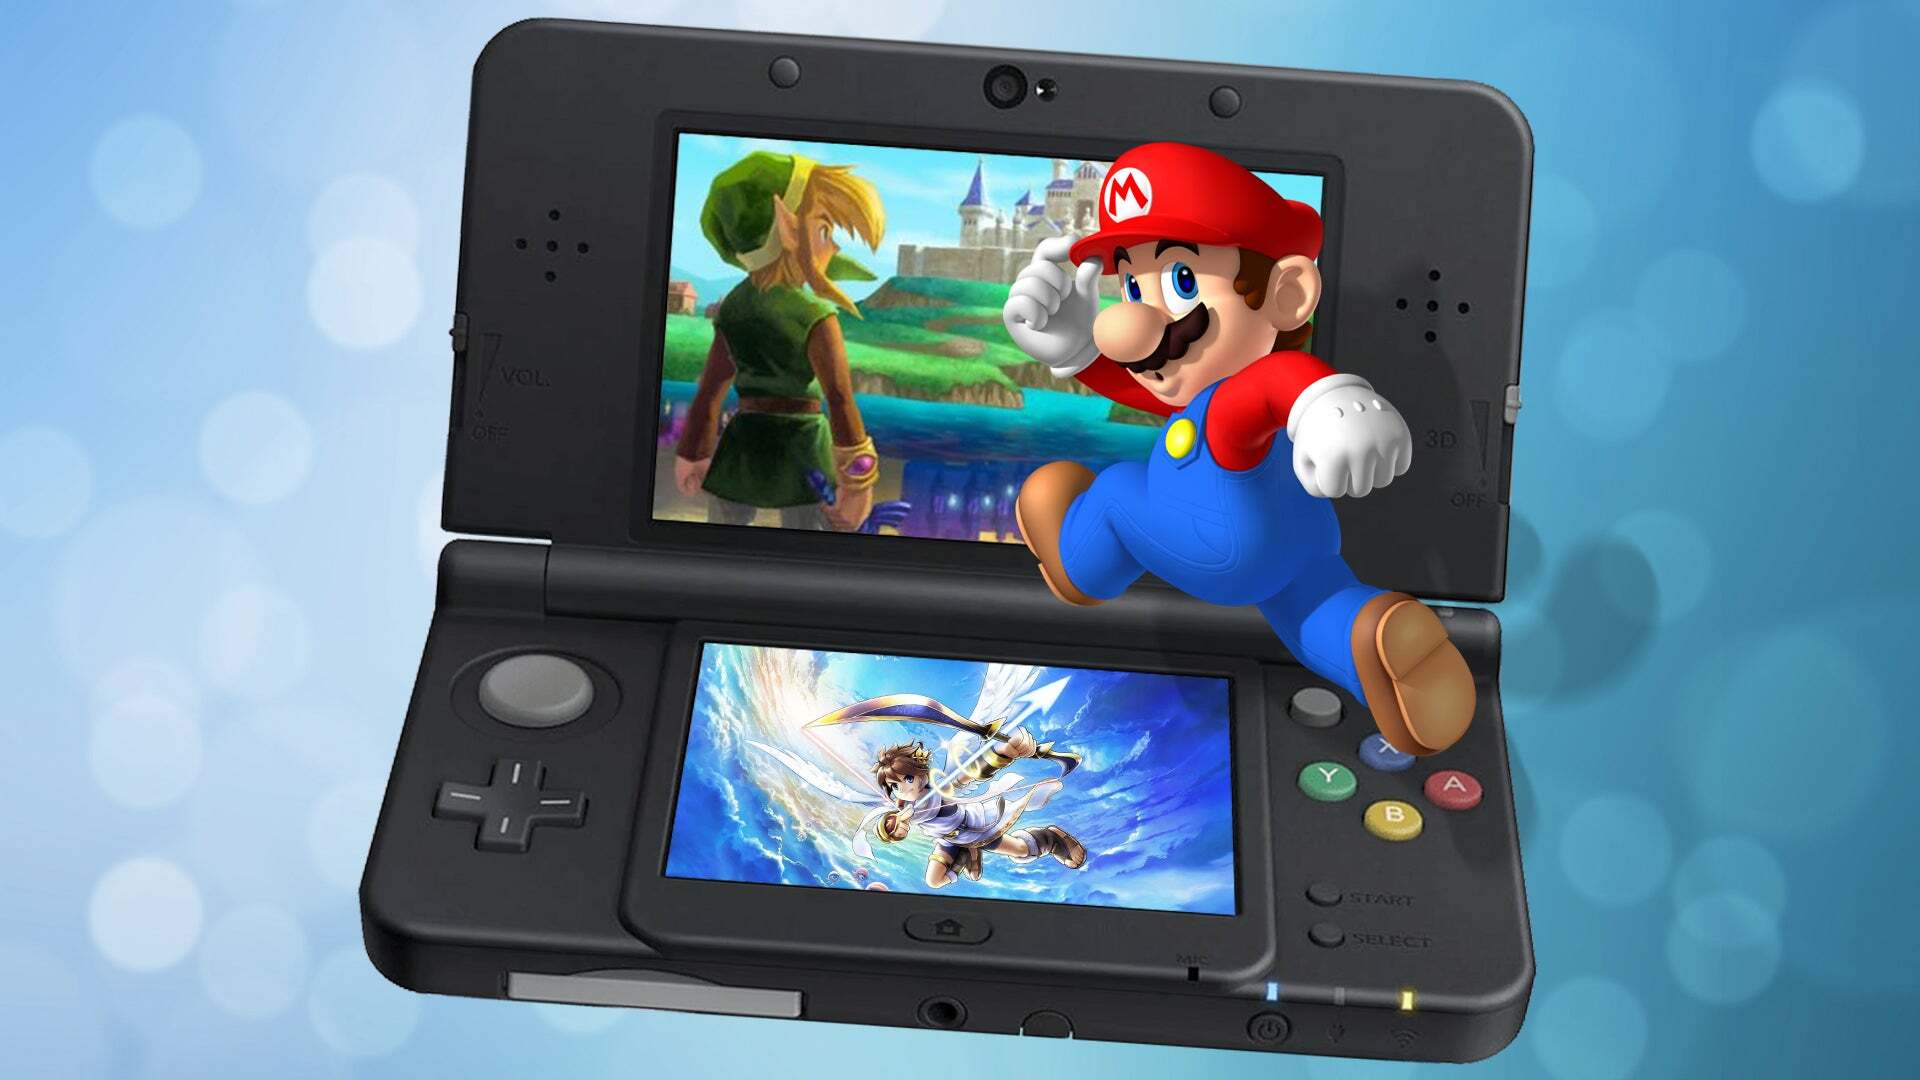 קנה Nintendo 3DS בלוח המודעות: הרפתקה תלת מימדית למשחקים